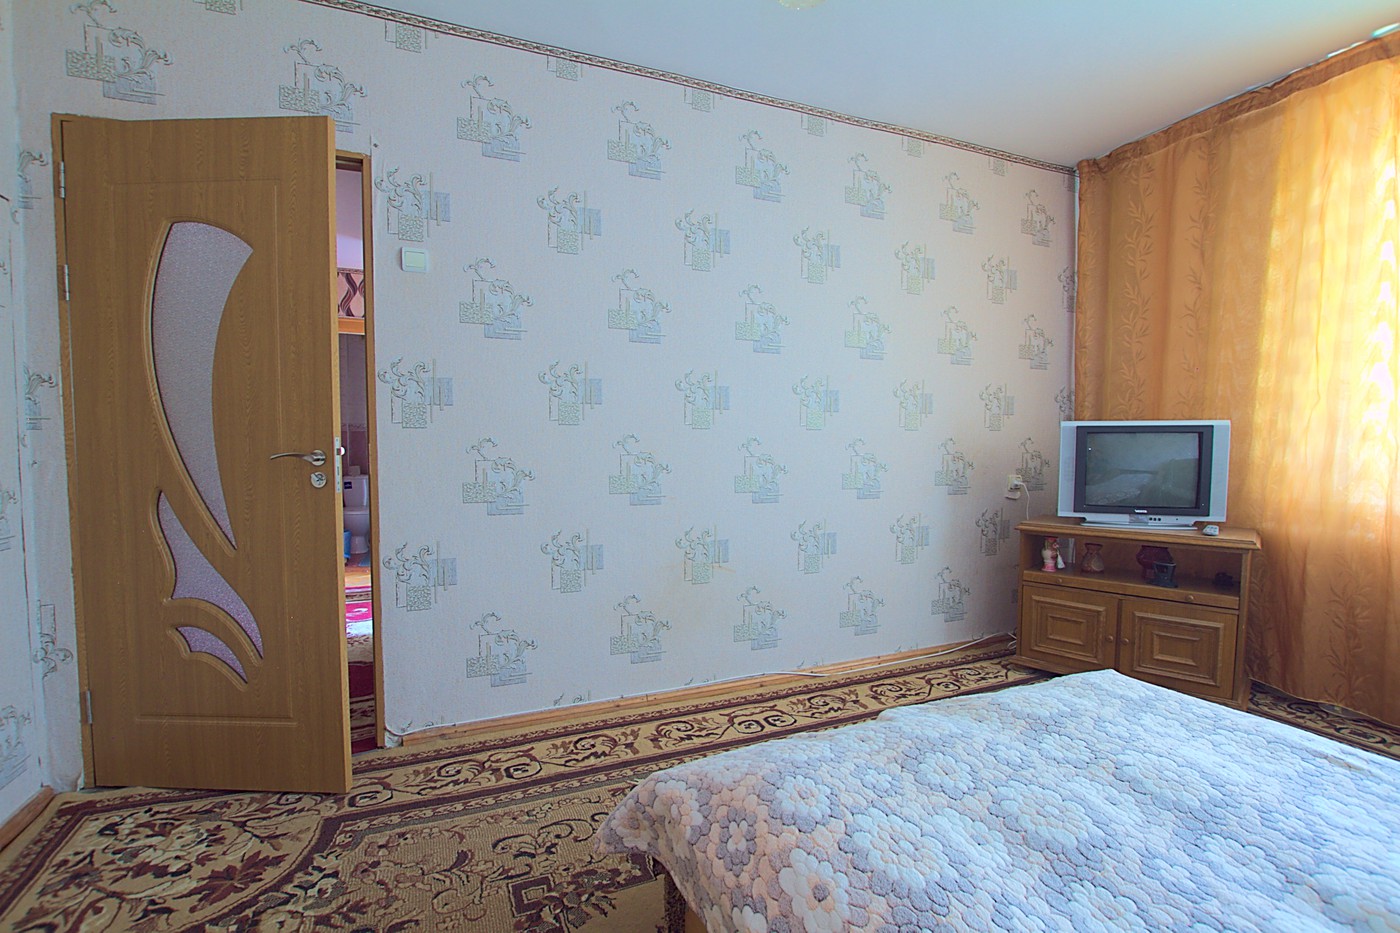 Кишинев, Рышкановка. Дешевая аренда возле Макдональдса: 2 комнаты, 1 спальня, 48 m²